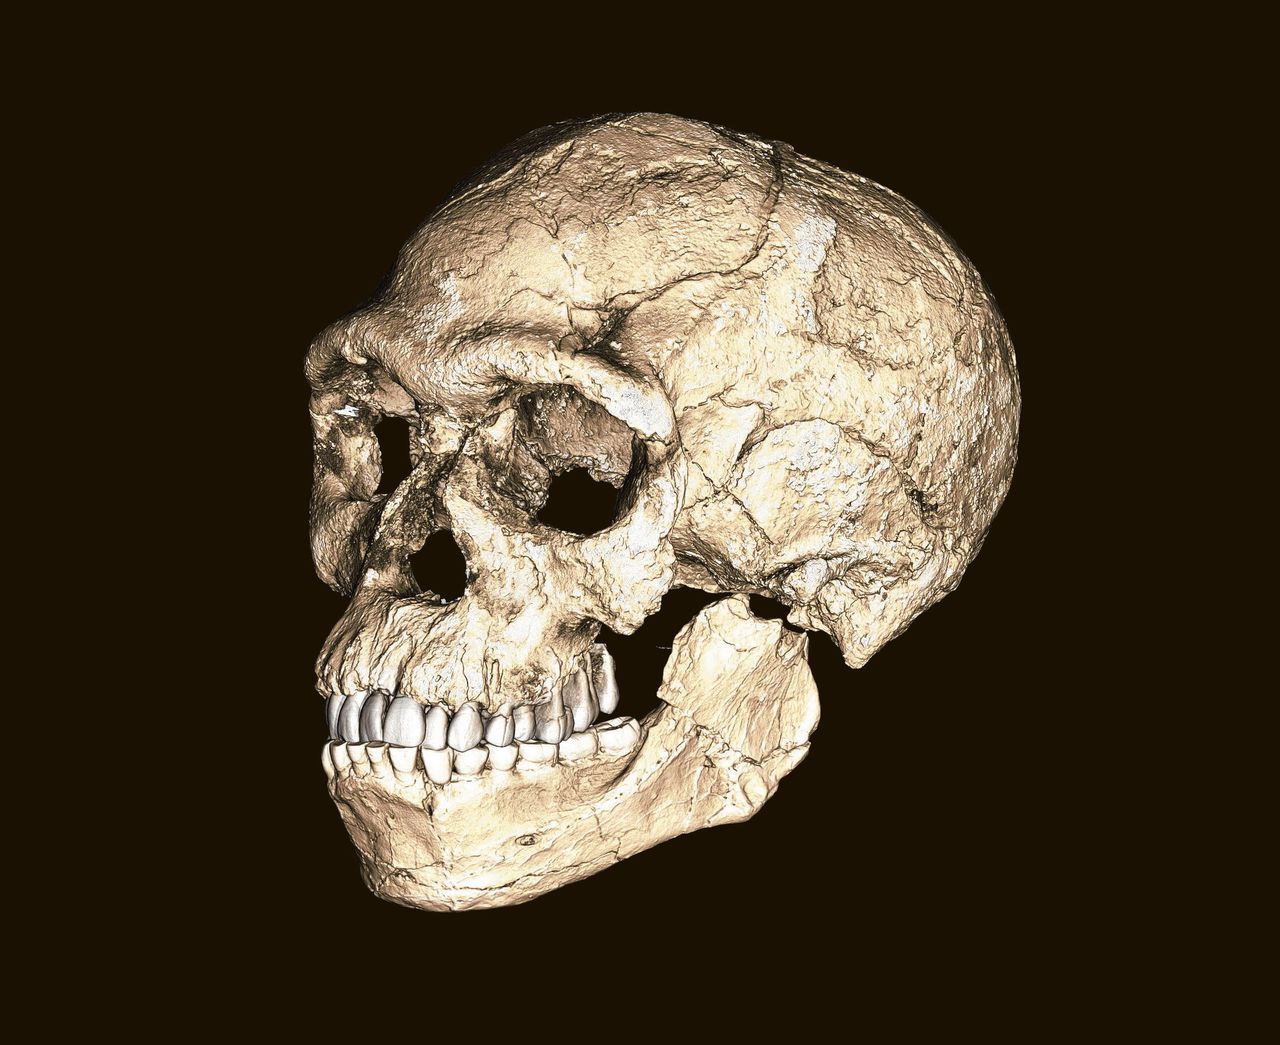 Incomplete schedel (boven), recent gevonden in Jebel Irhoud, en een reconstructie op basis van meerdere fossielen.